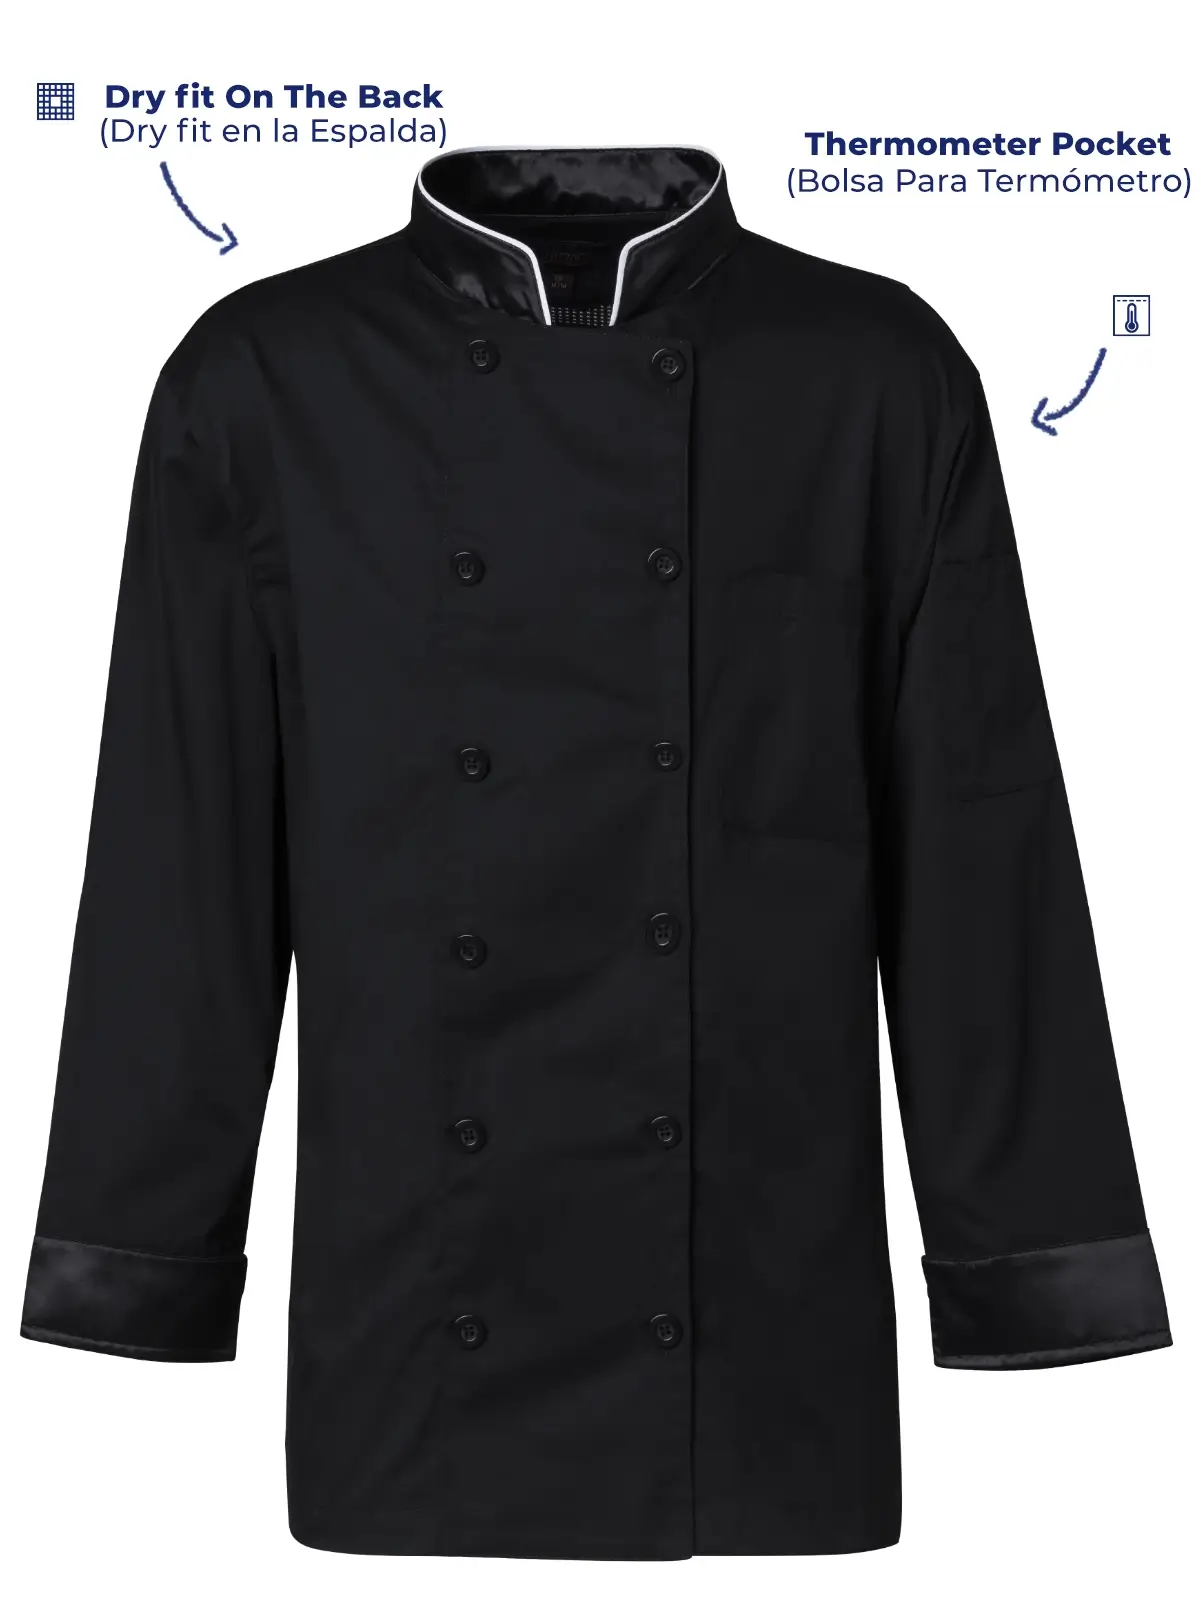 Chef Jacket - kitchen uniforms